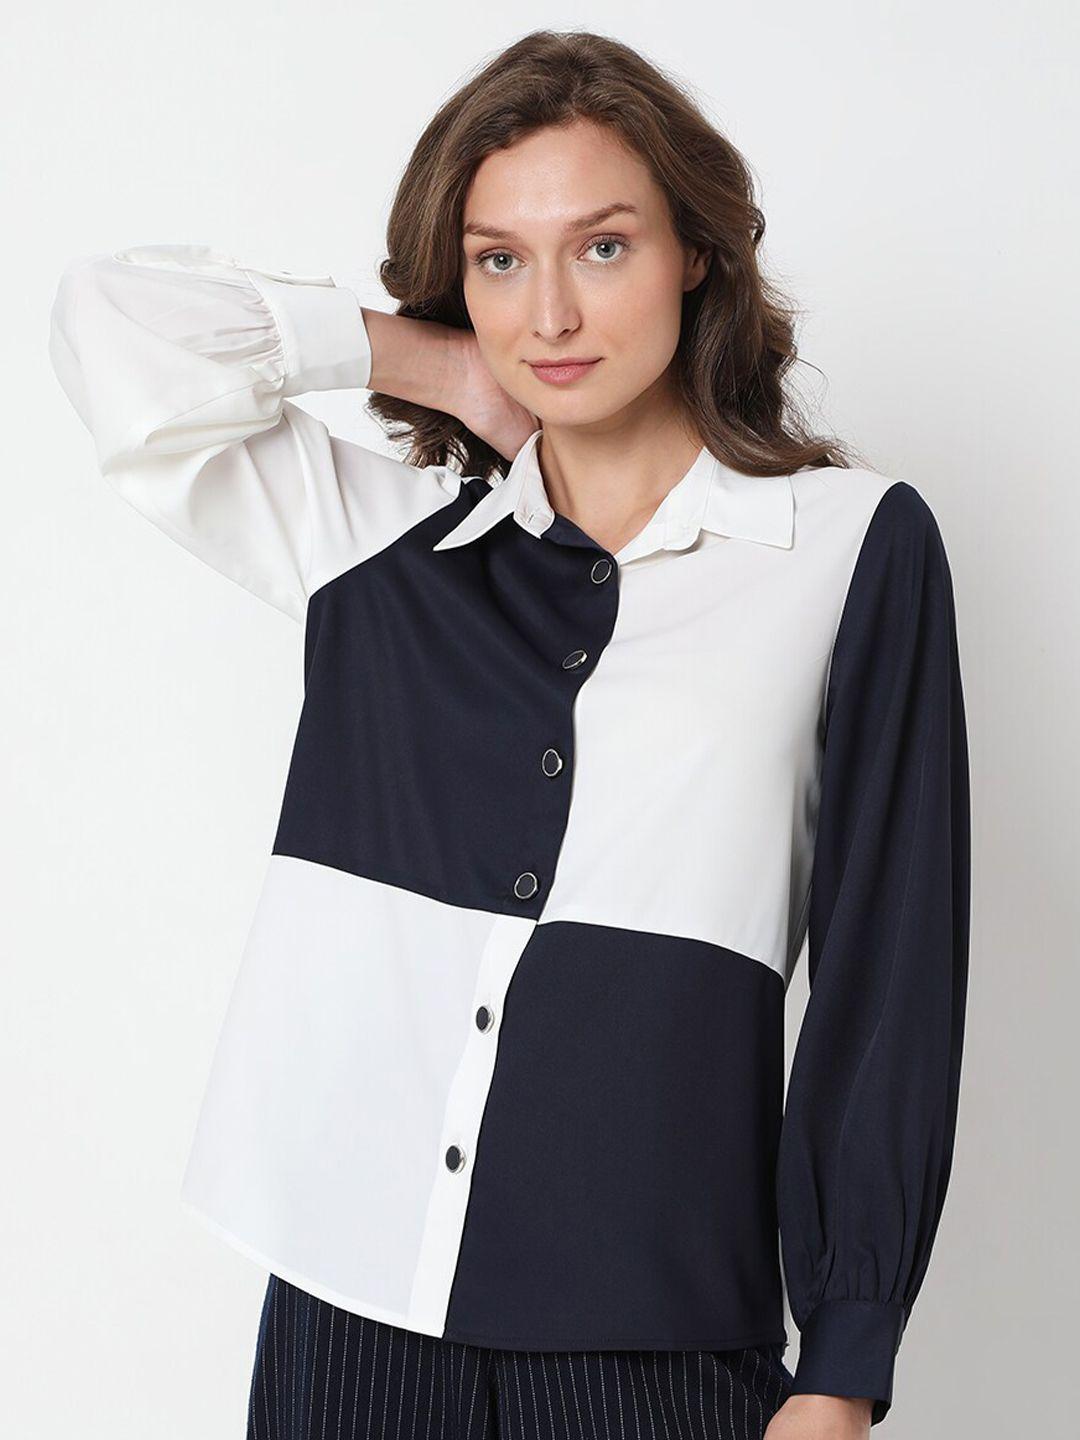 vero moda women white & navy blue colourblocked polyester casual shirt